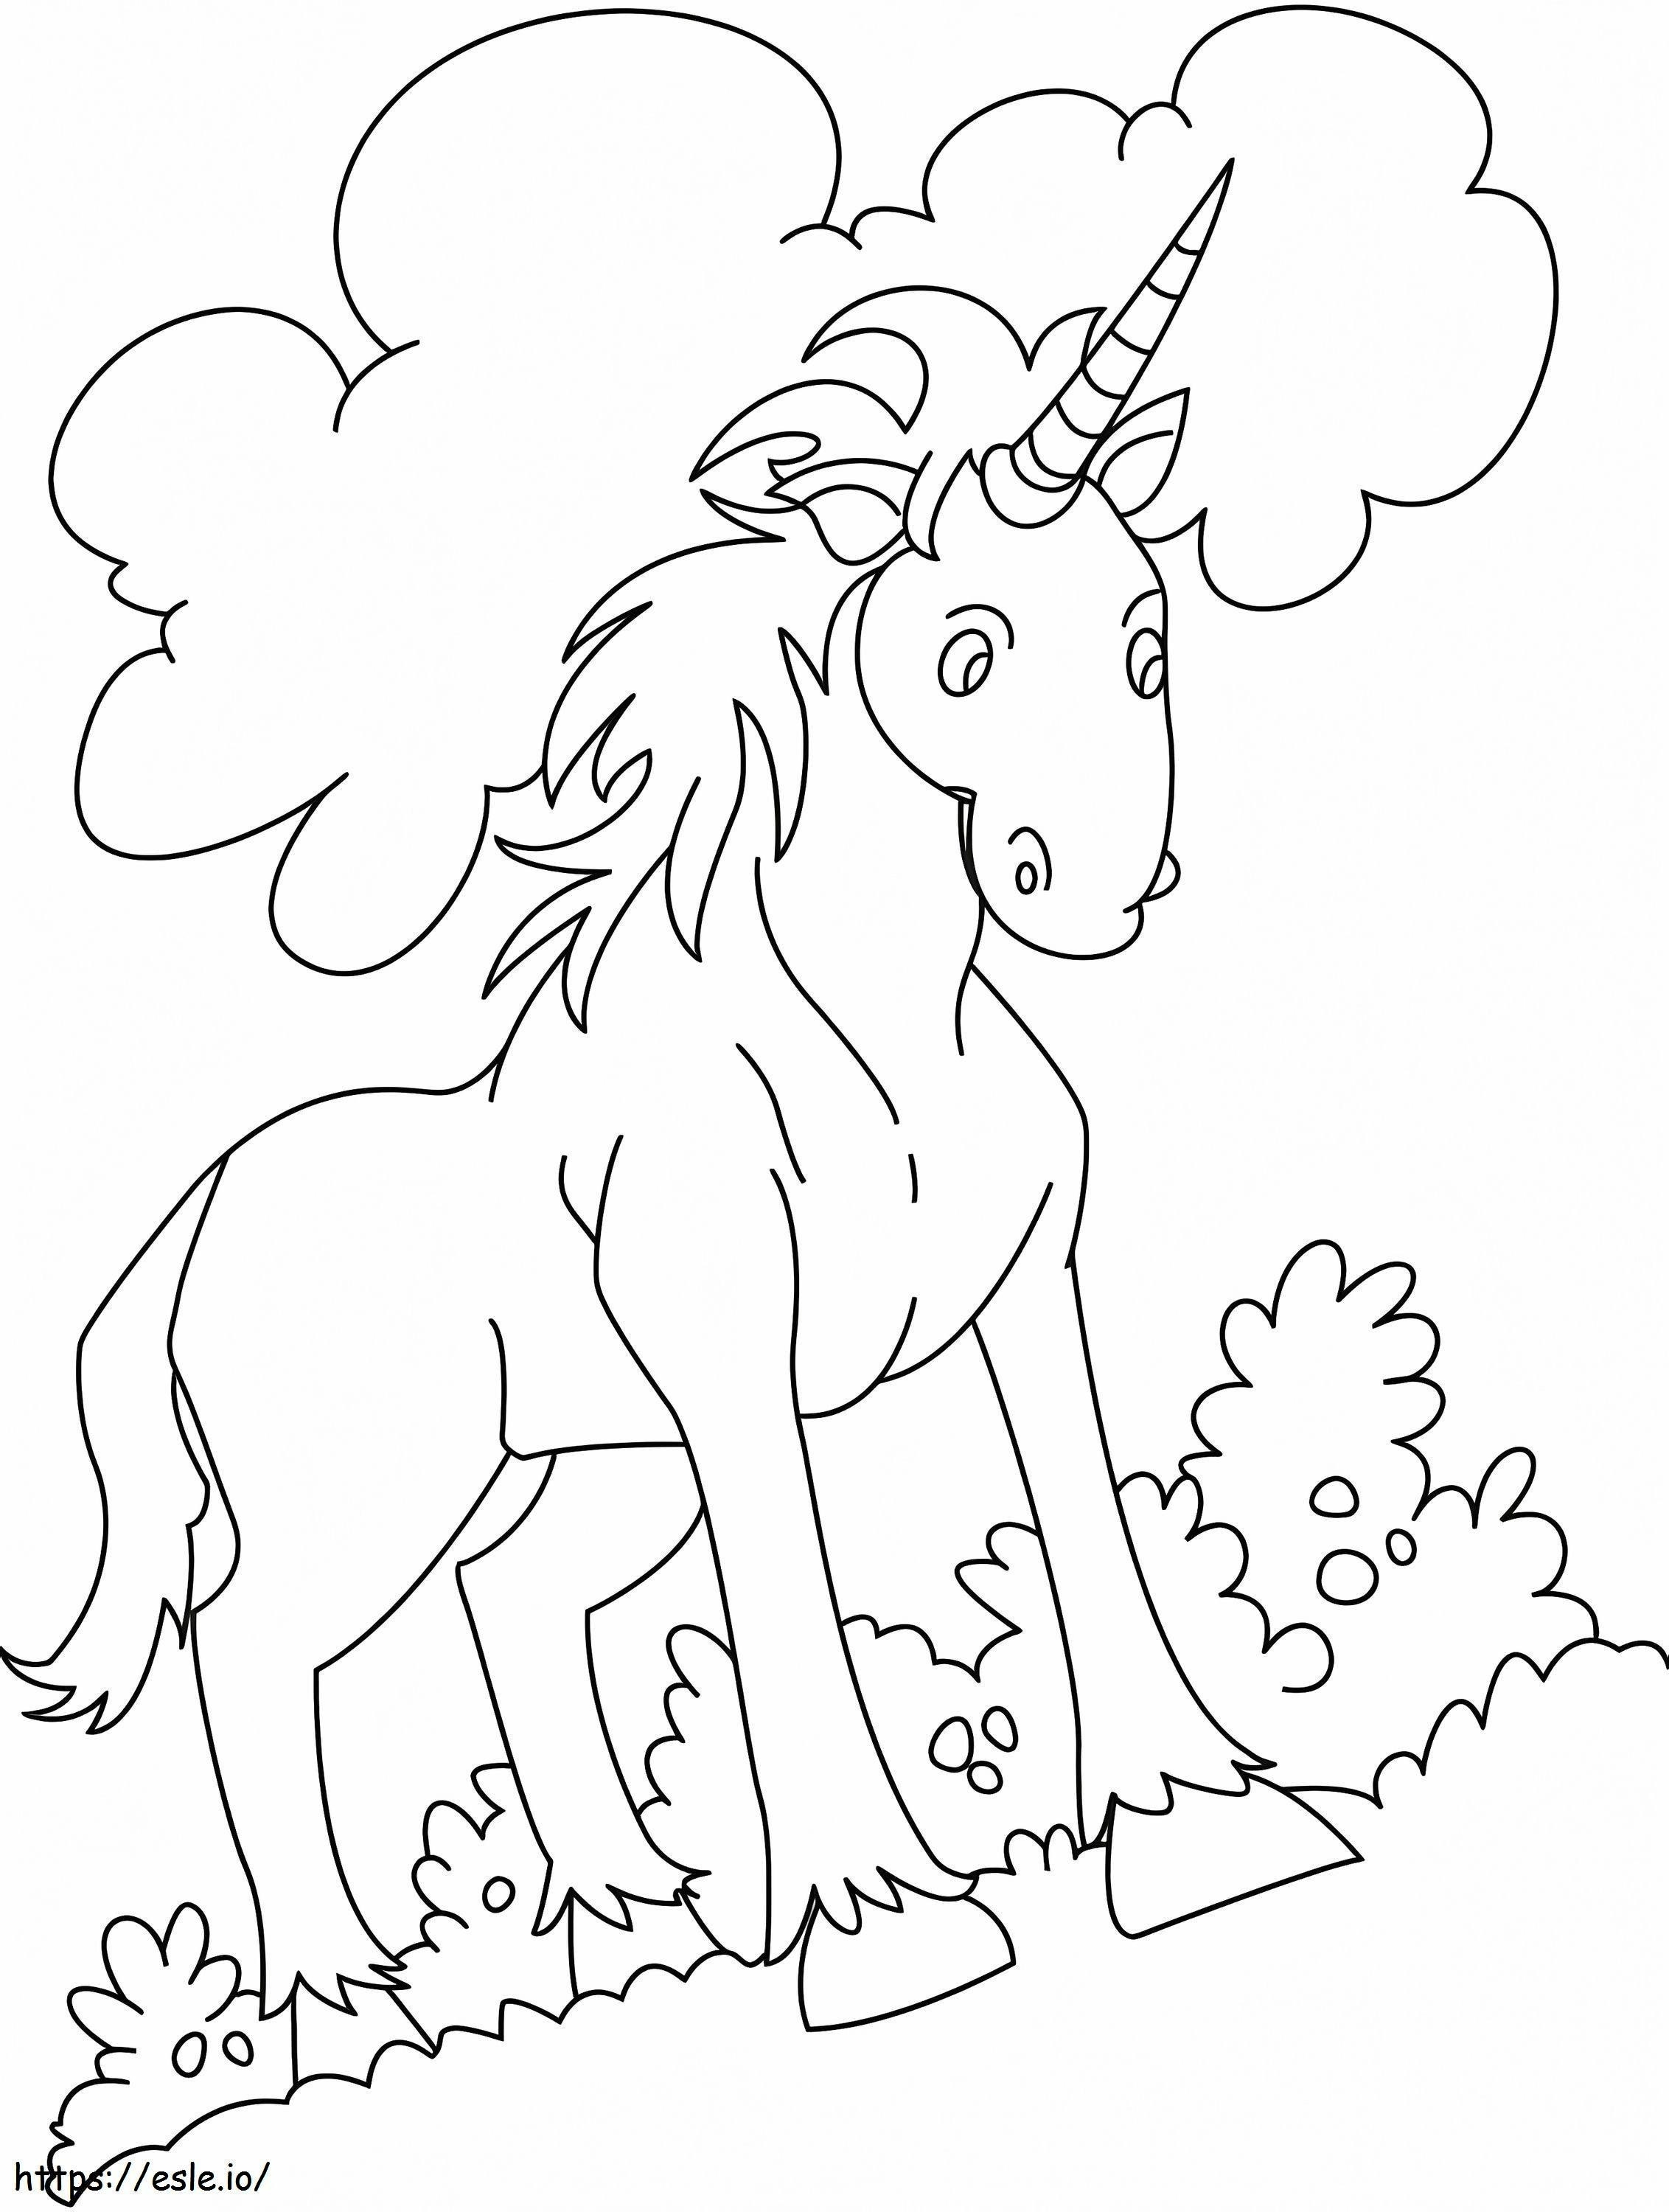 Adorable Unicornio 3 para colorear